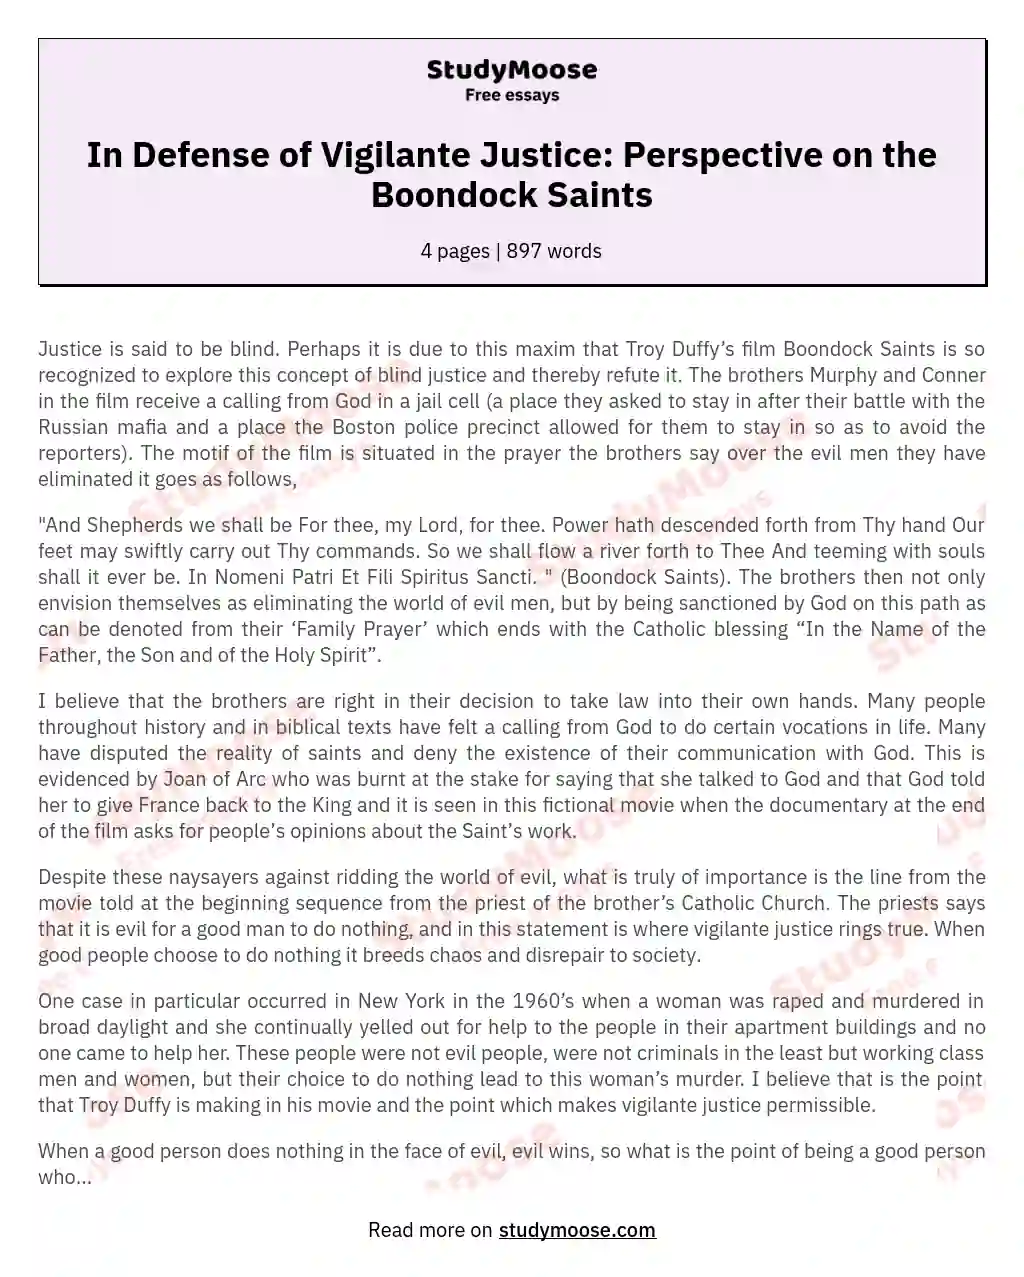 In Defense of Vigilante Justice: Perspective on the Boondock Saints essay